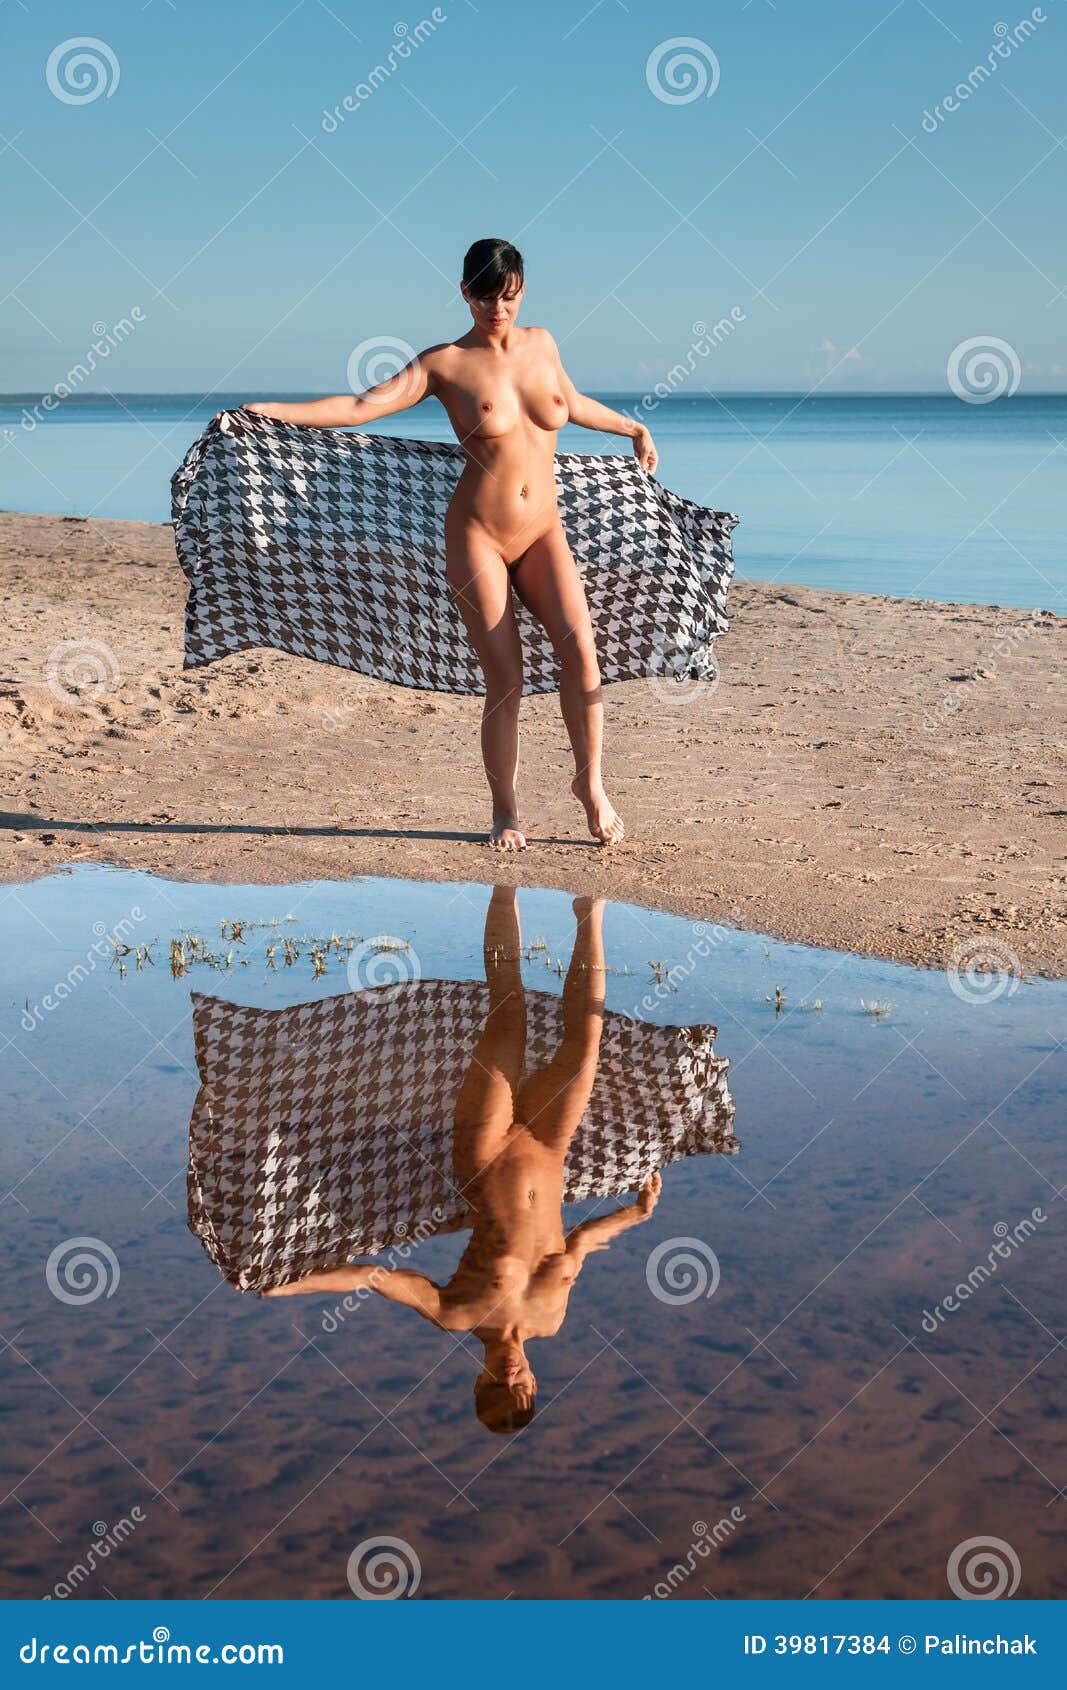 Mujer desnuda en una playa foto de archivo. Imagen de arena - 39817384